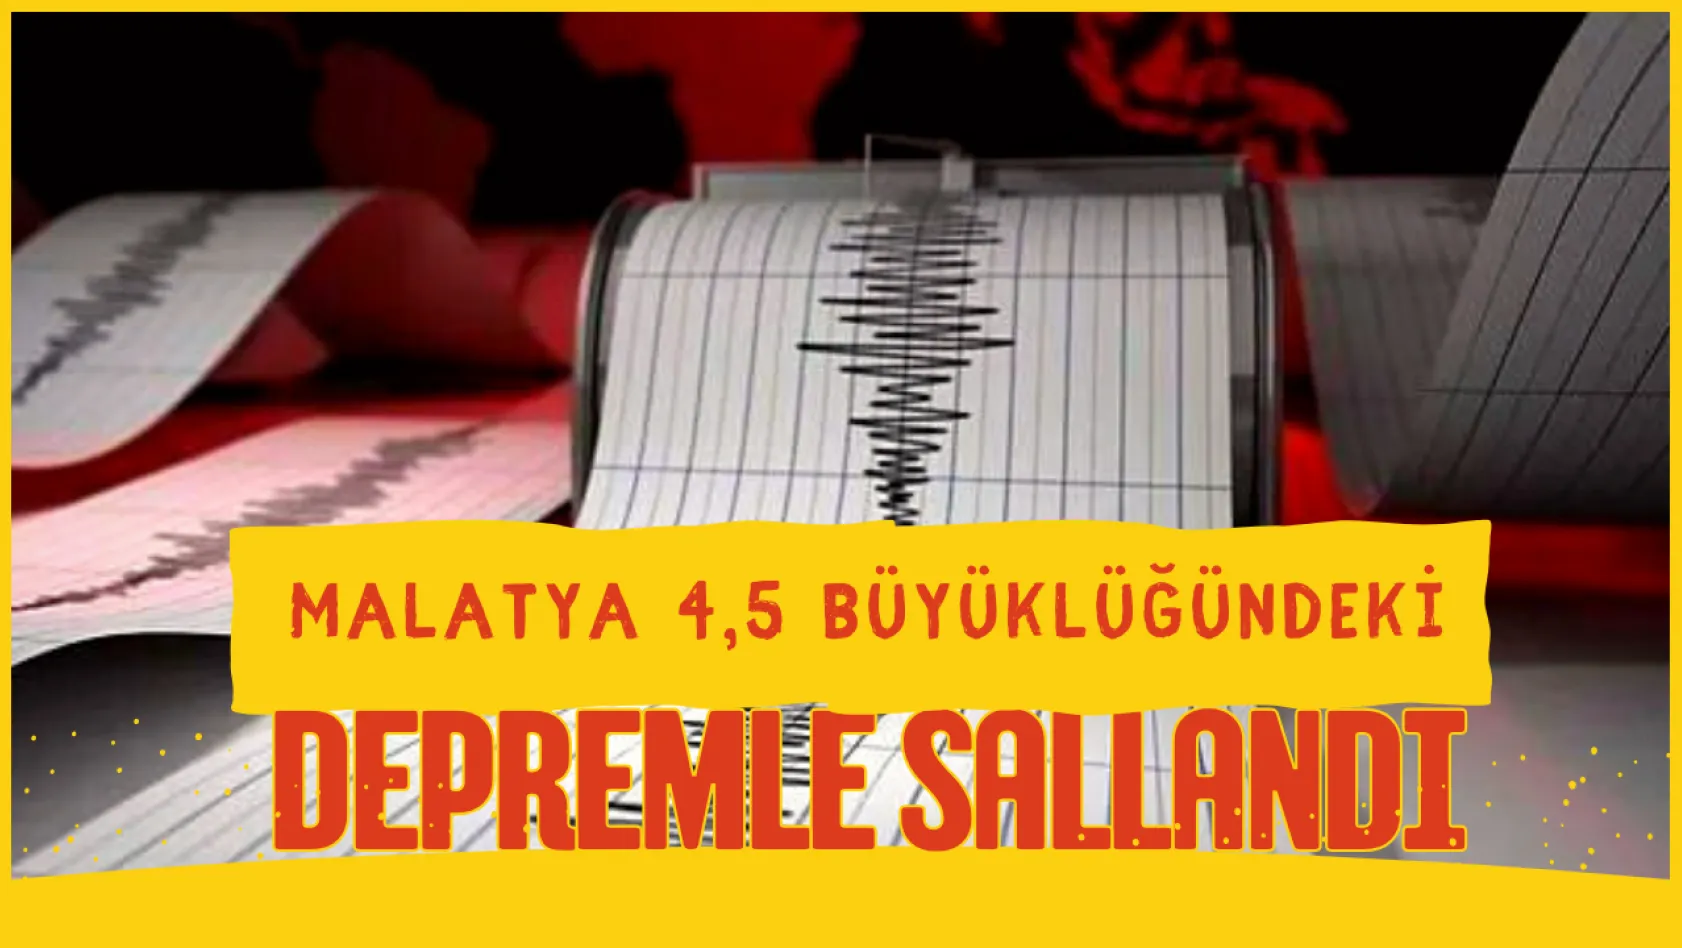 Malatya 4,5 büyüklüğündeki depremle sallandı